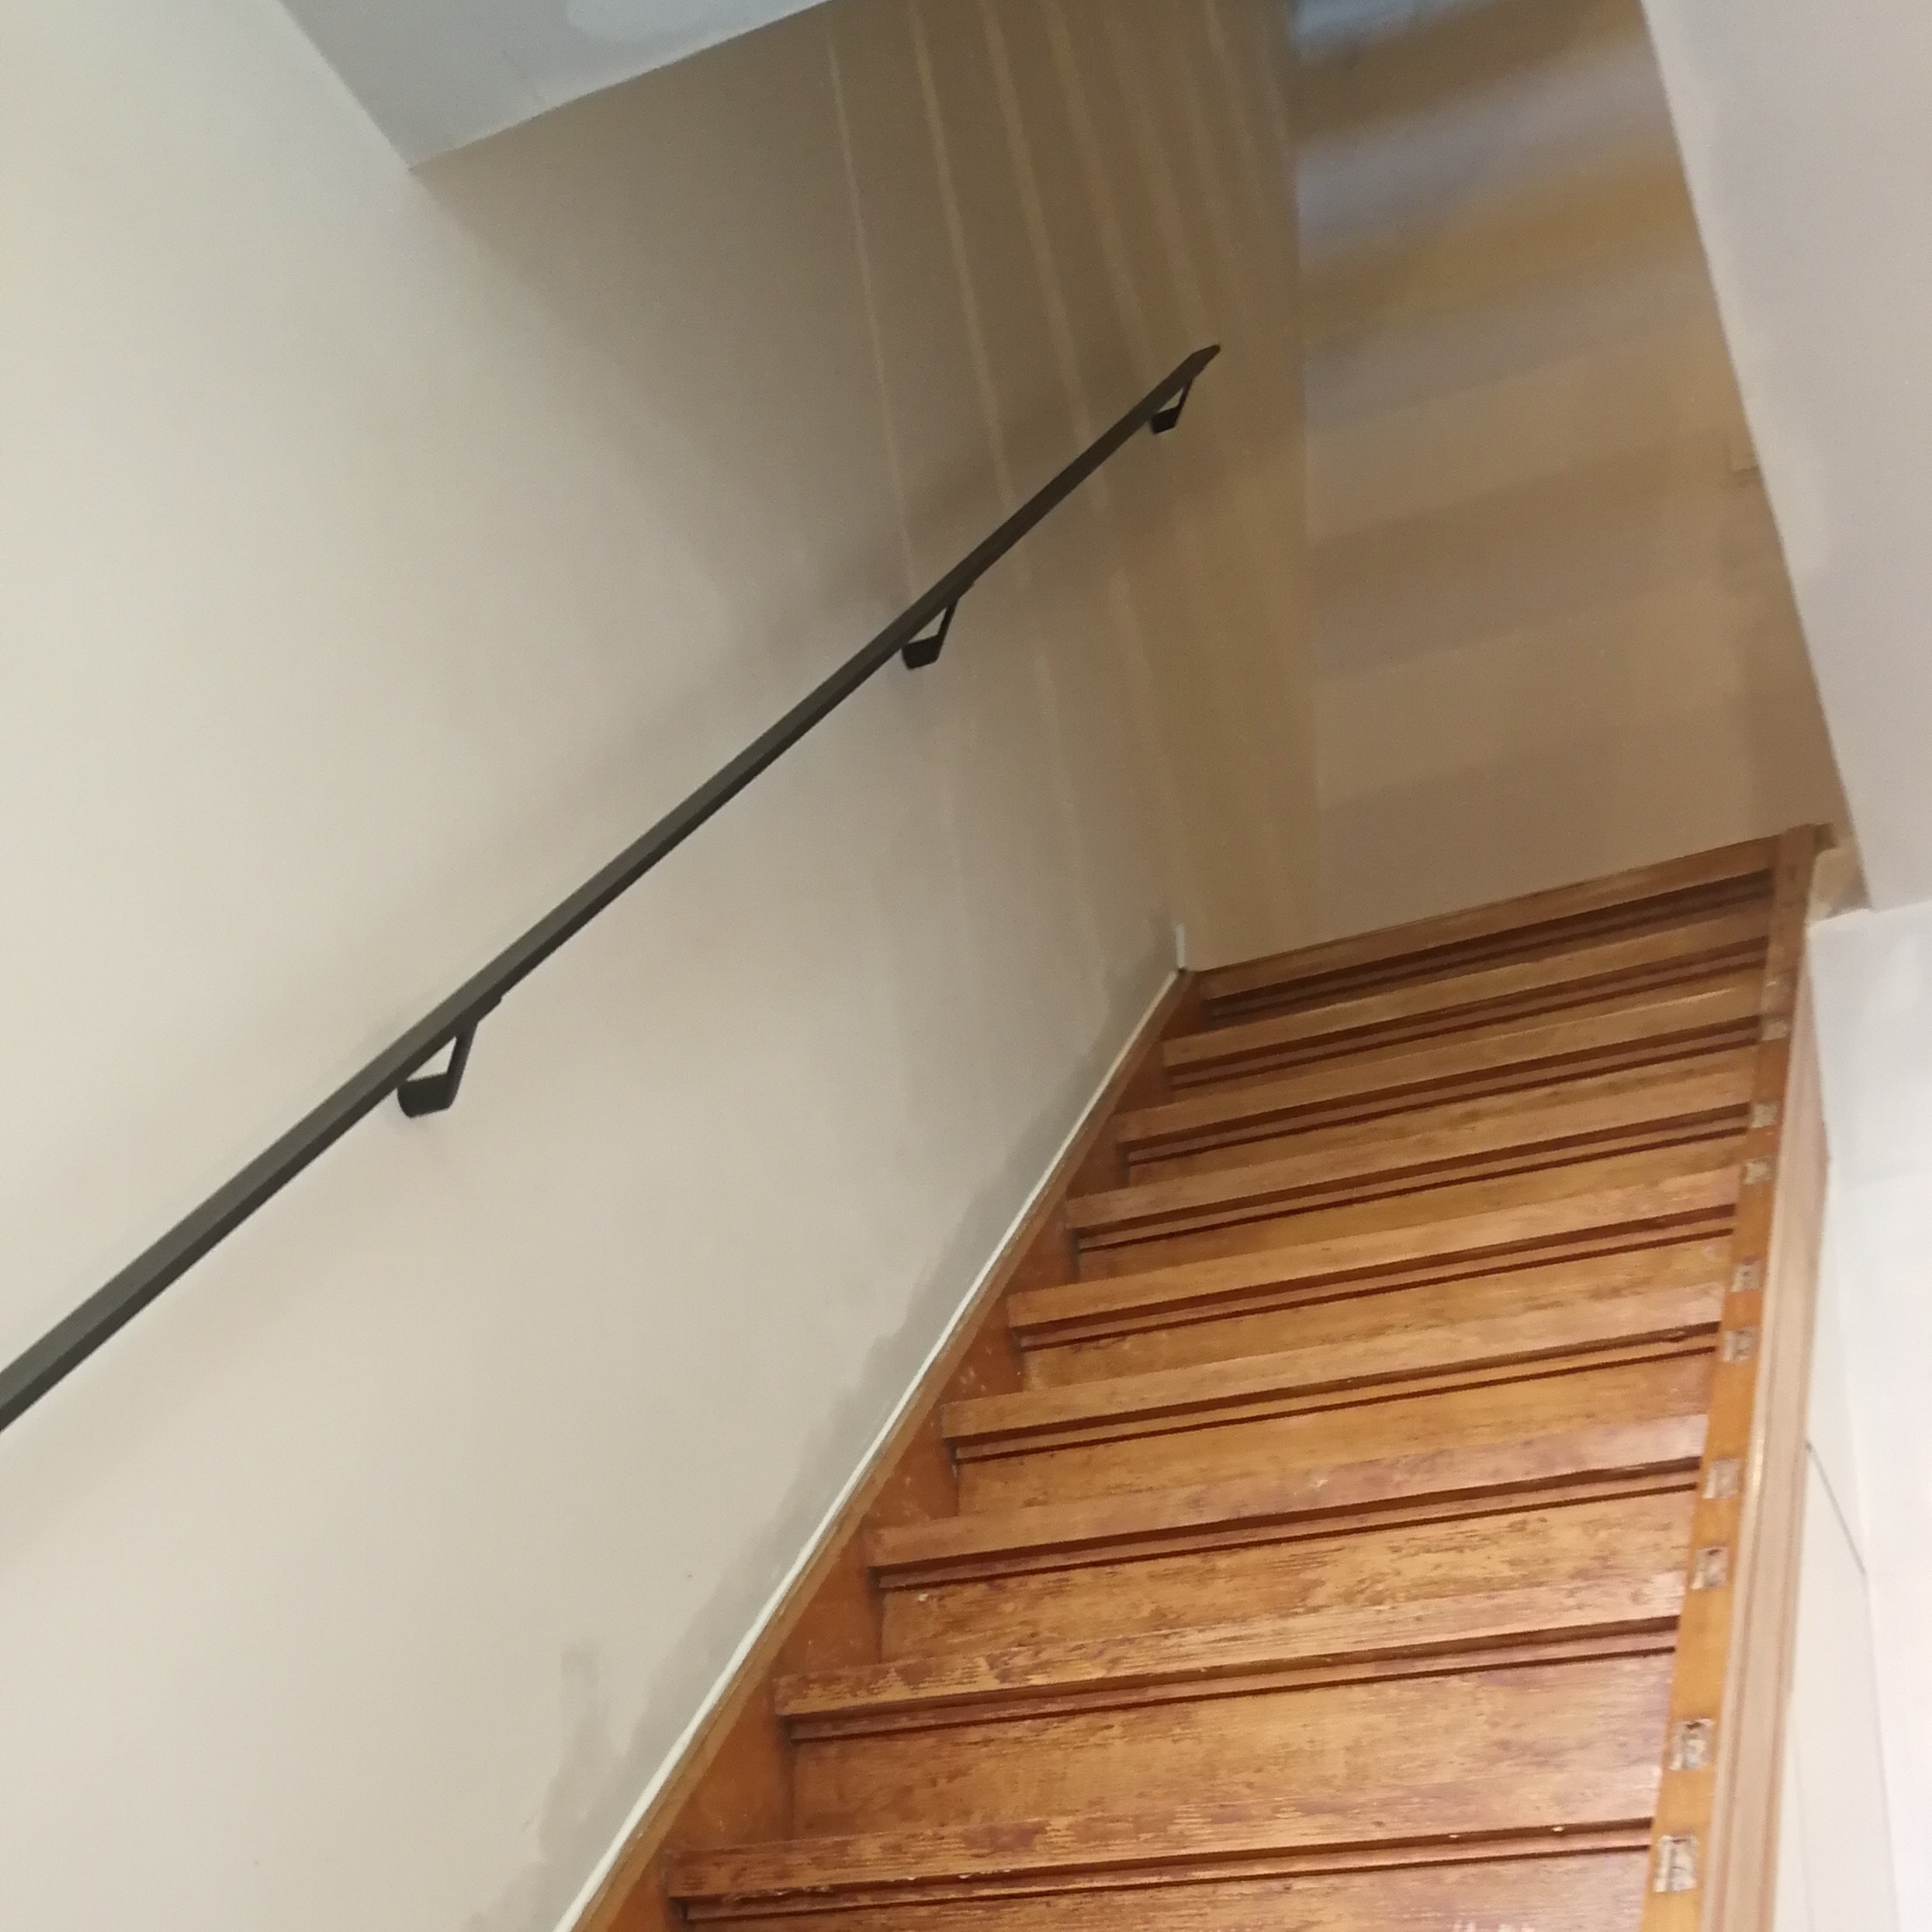  Handlauf anthrazit beschichtet viereckig 40x10 - Eckige Treppengeländer - Treppenhandlauf mit anthrazitgrauer Pulverbeschichtung